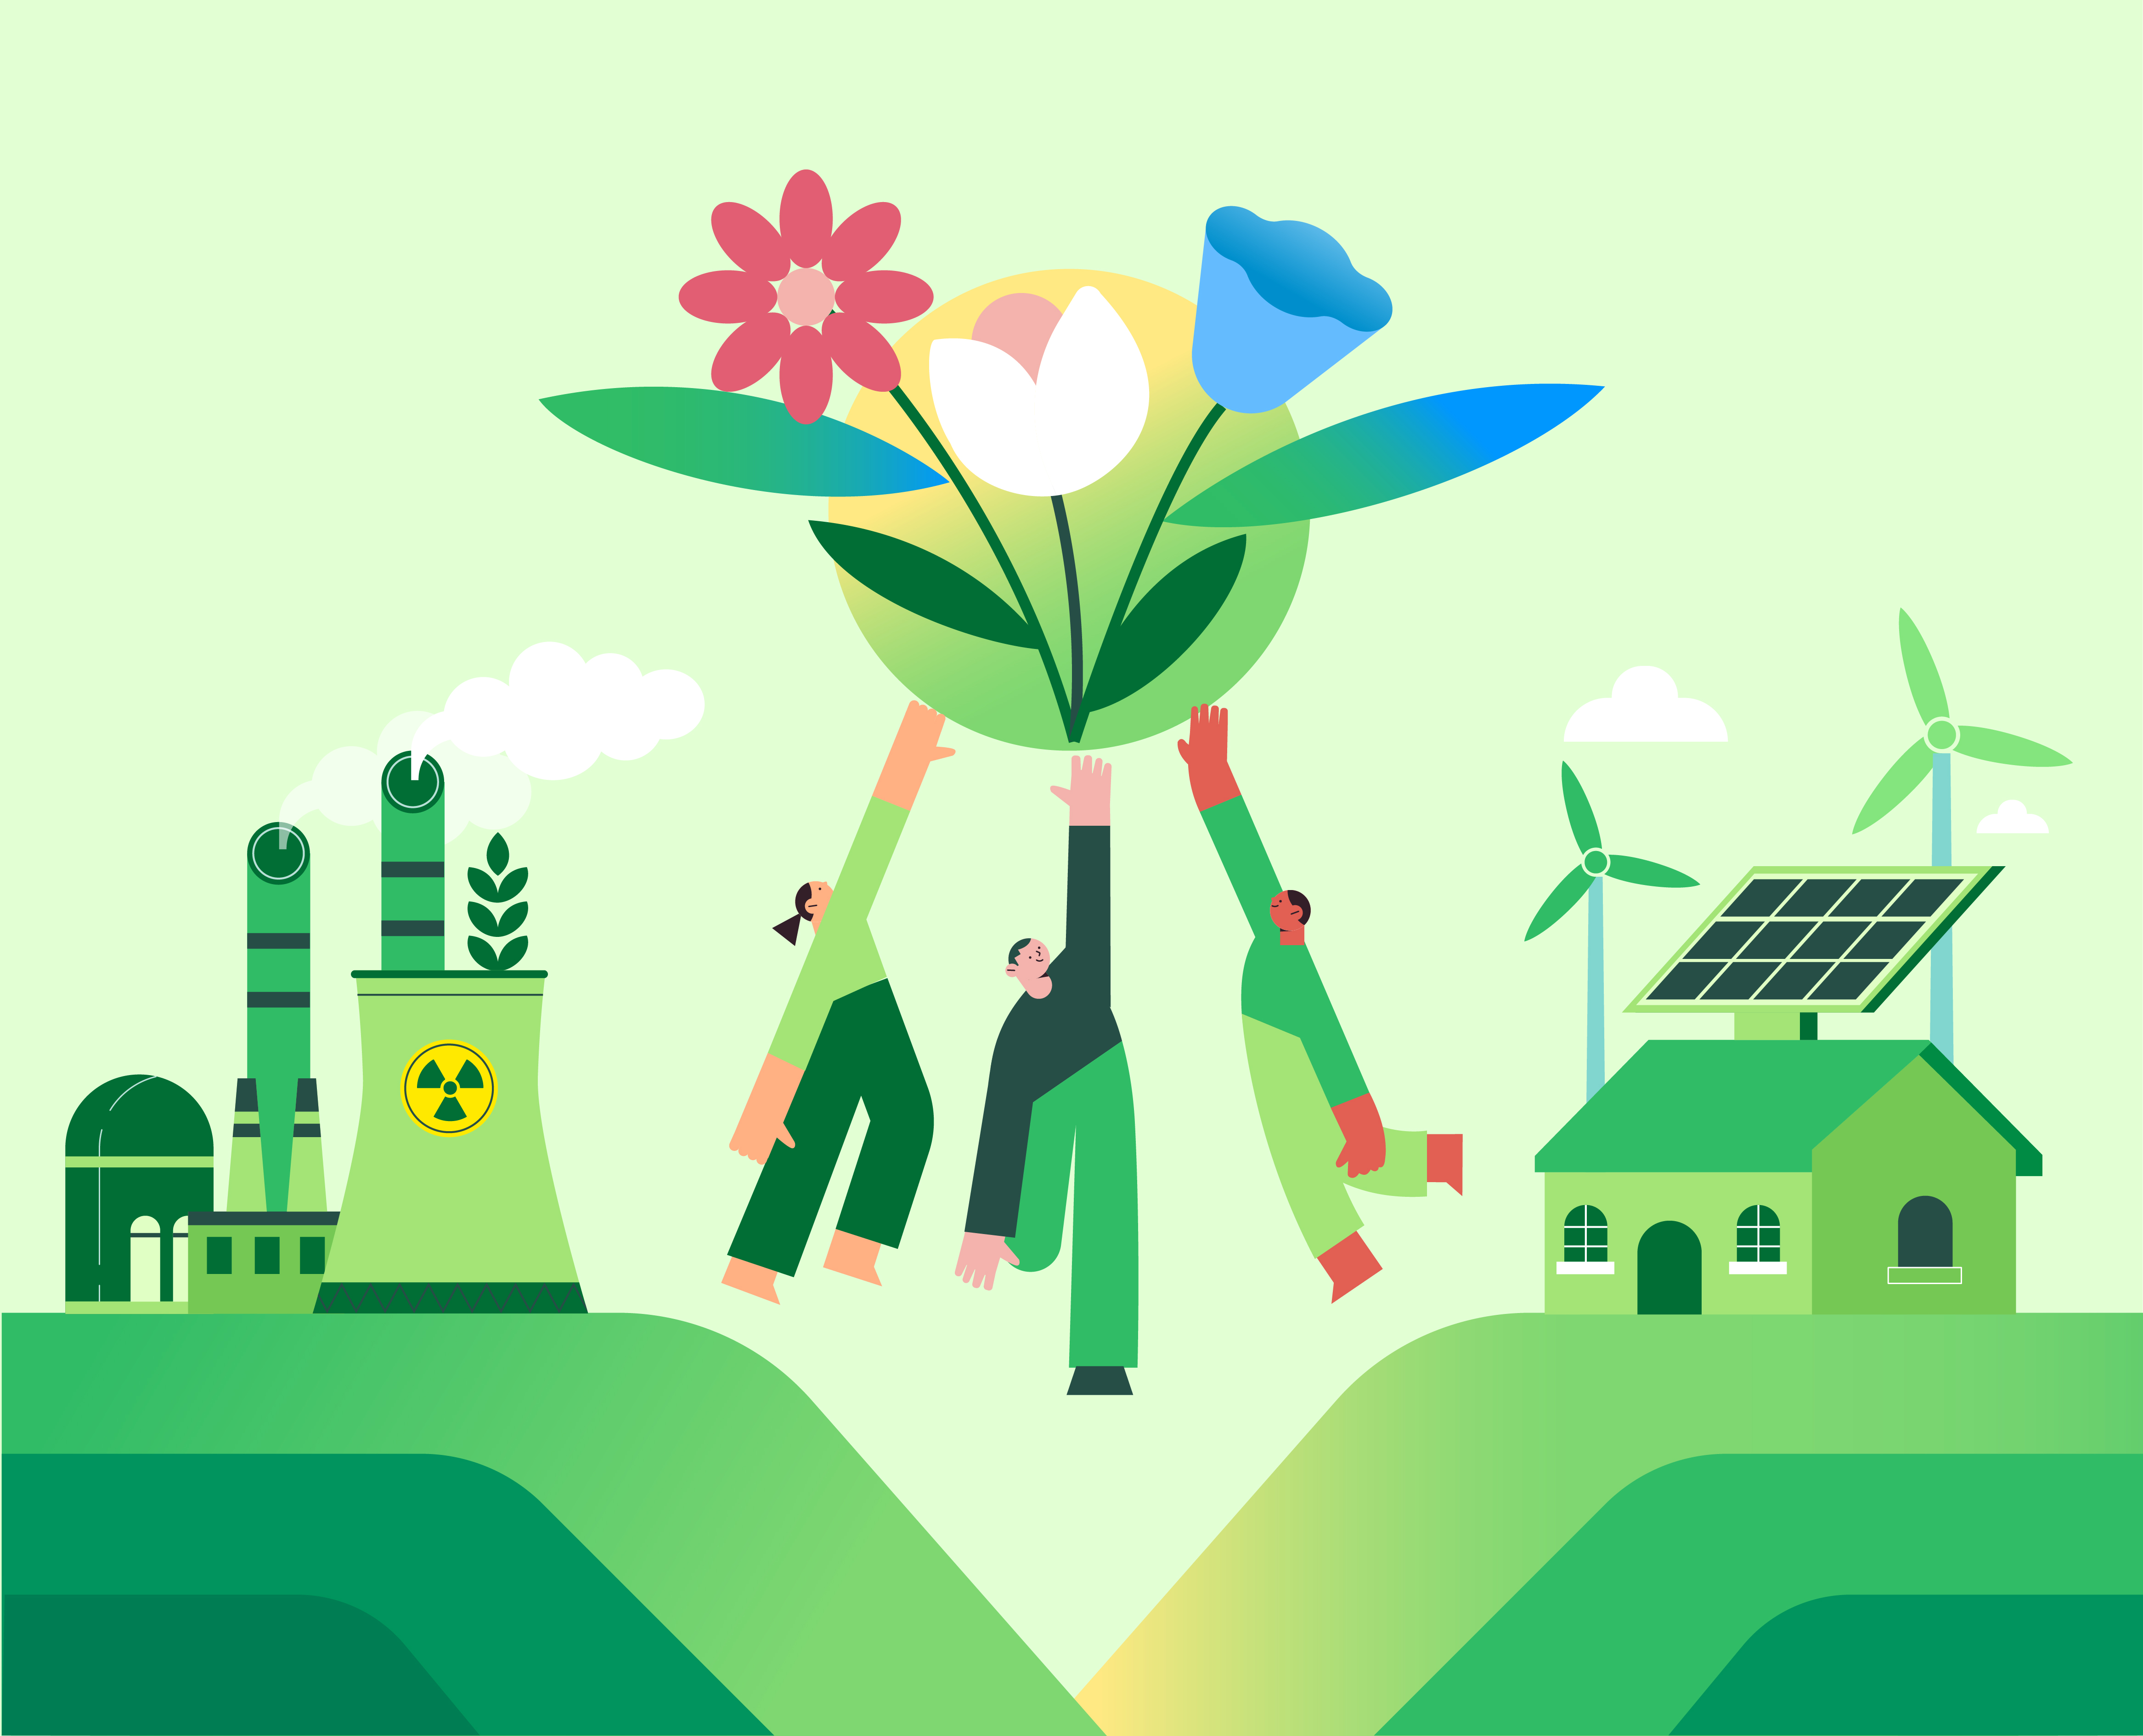 녹색성장은 경제적인 발전과 환경보호를 동시에 실현하기 위한 개념을 의미합니다. 지구 환경 문제의 심각성이 대두되면서 기업들은 이러한 문제에 대한 책임과 역할을 염두에 두고 사회적 가치를 창출해야 한다는 요구가 점점 높아지고 있습니다.